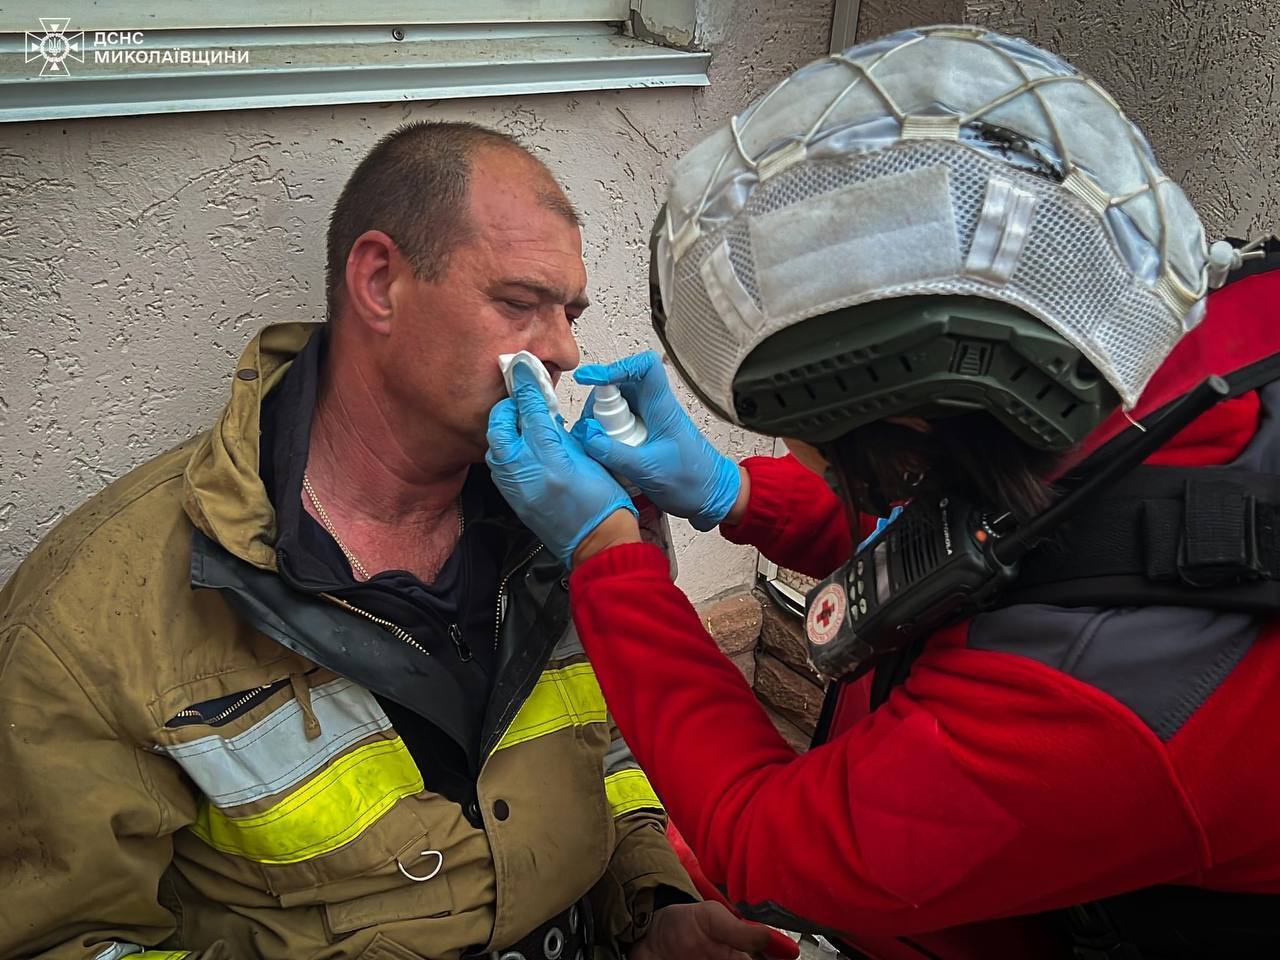 У Миколаєві вибухнув невідомий пристрій і спалахнула пожежа: постраждали 5 рятувальників. Фото